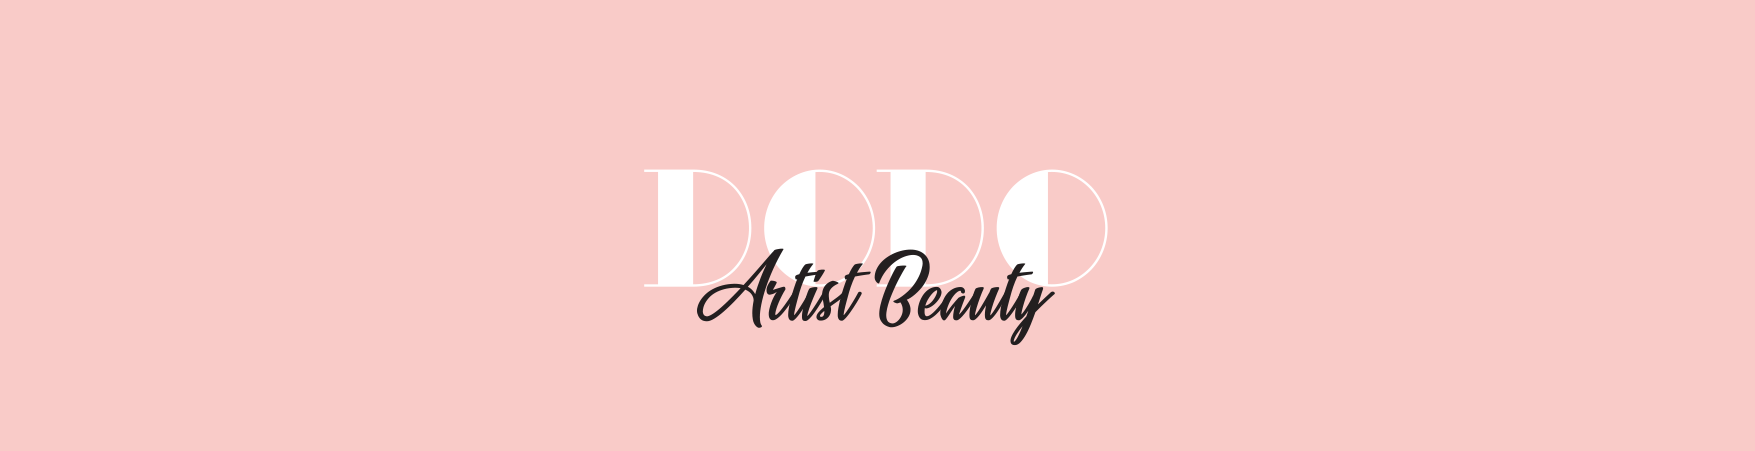 Dodo Artist Beauty